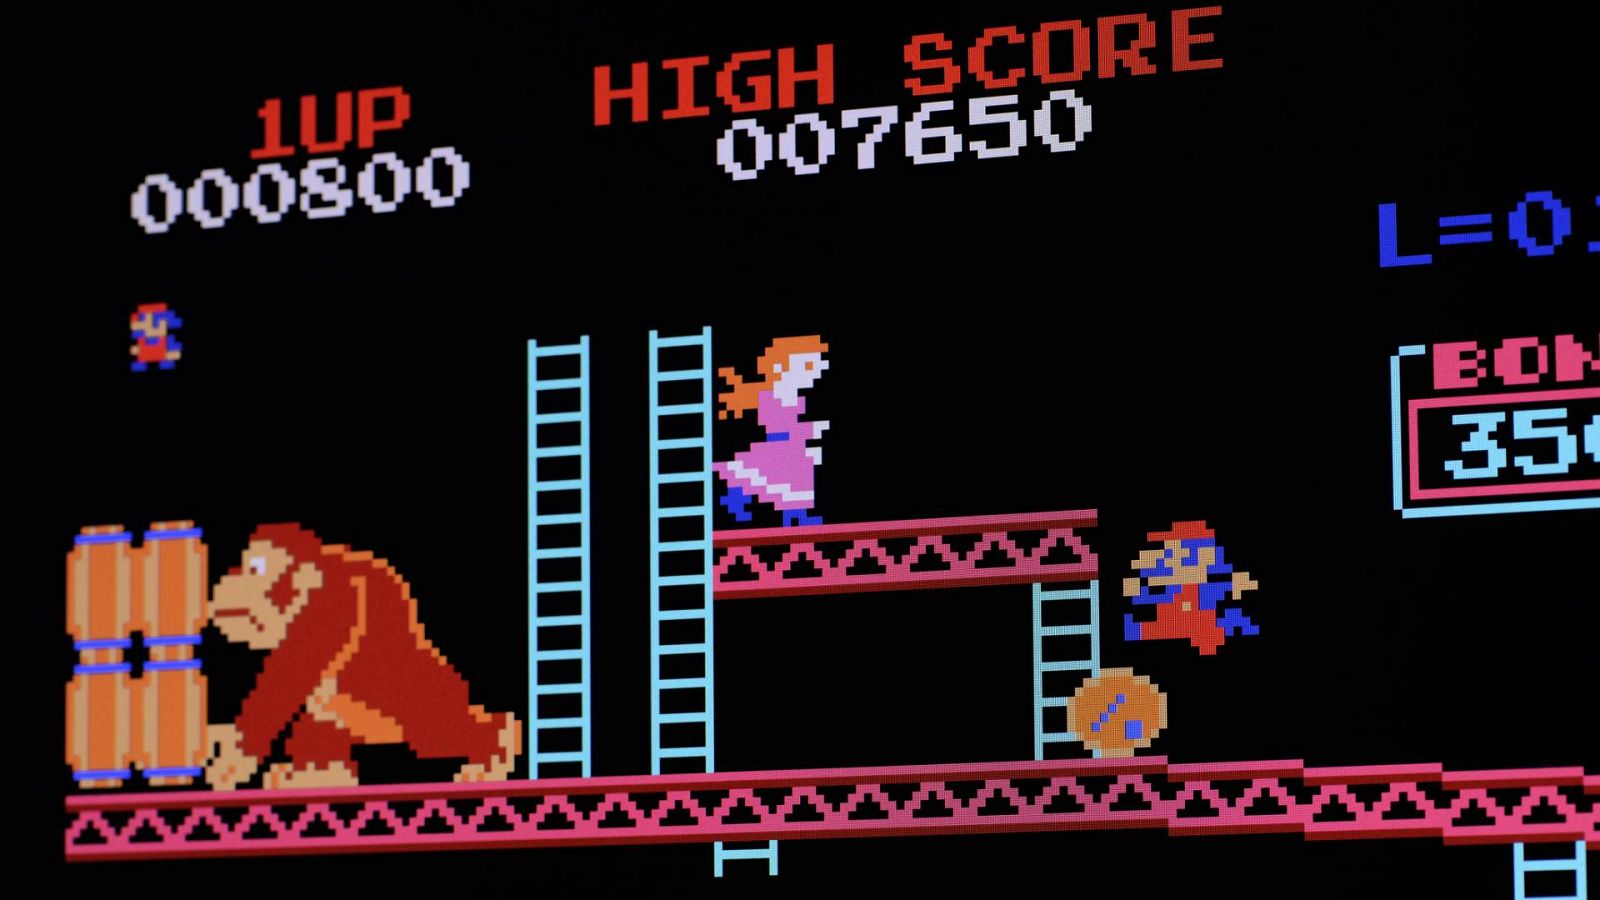 Donkey Kong pone obstáculos a Mario en el videojuego de Miyamoto de 1981 que ahora cumple 40 años